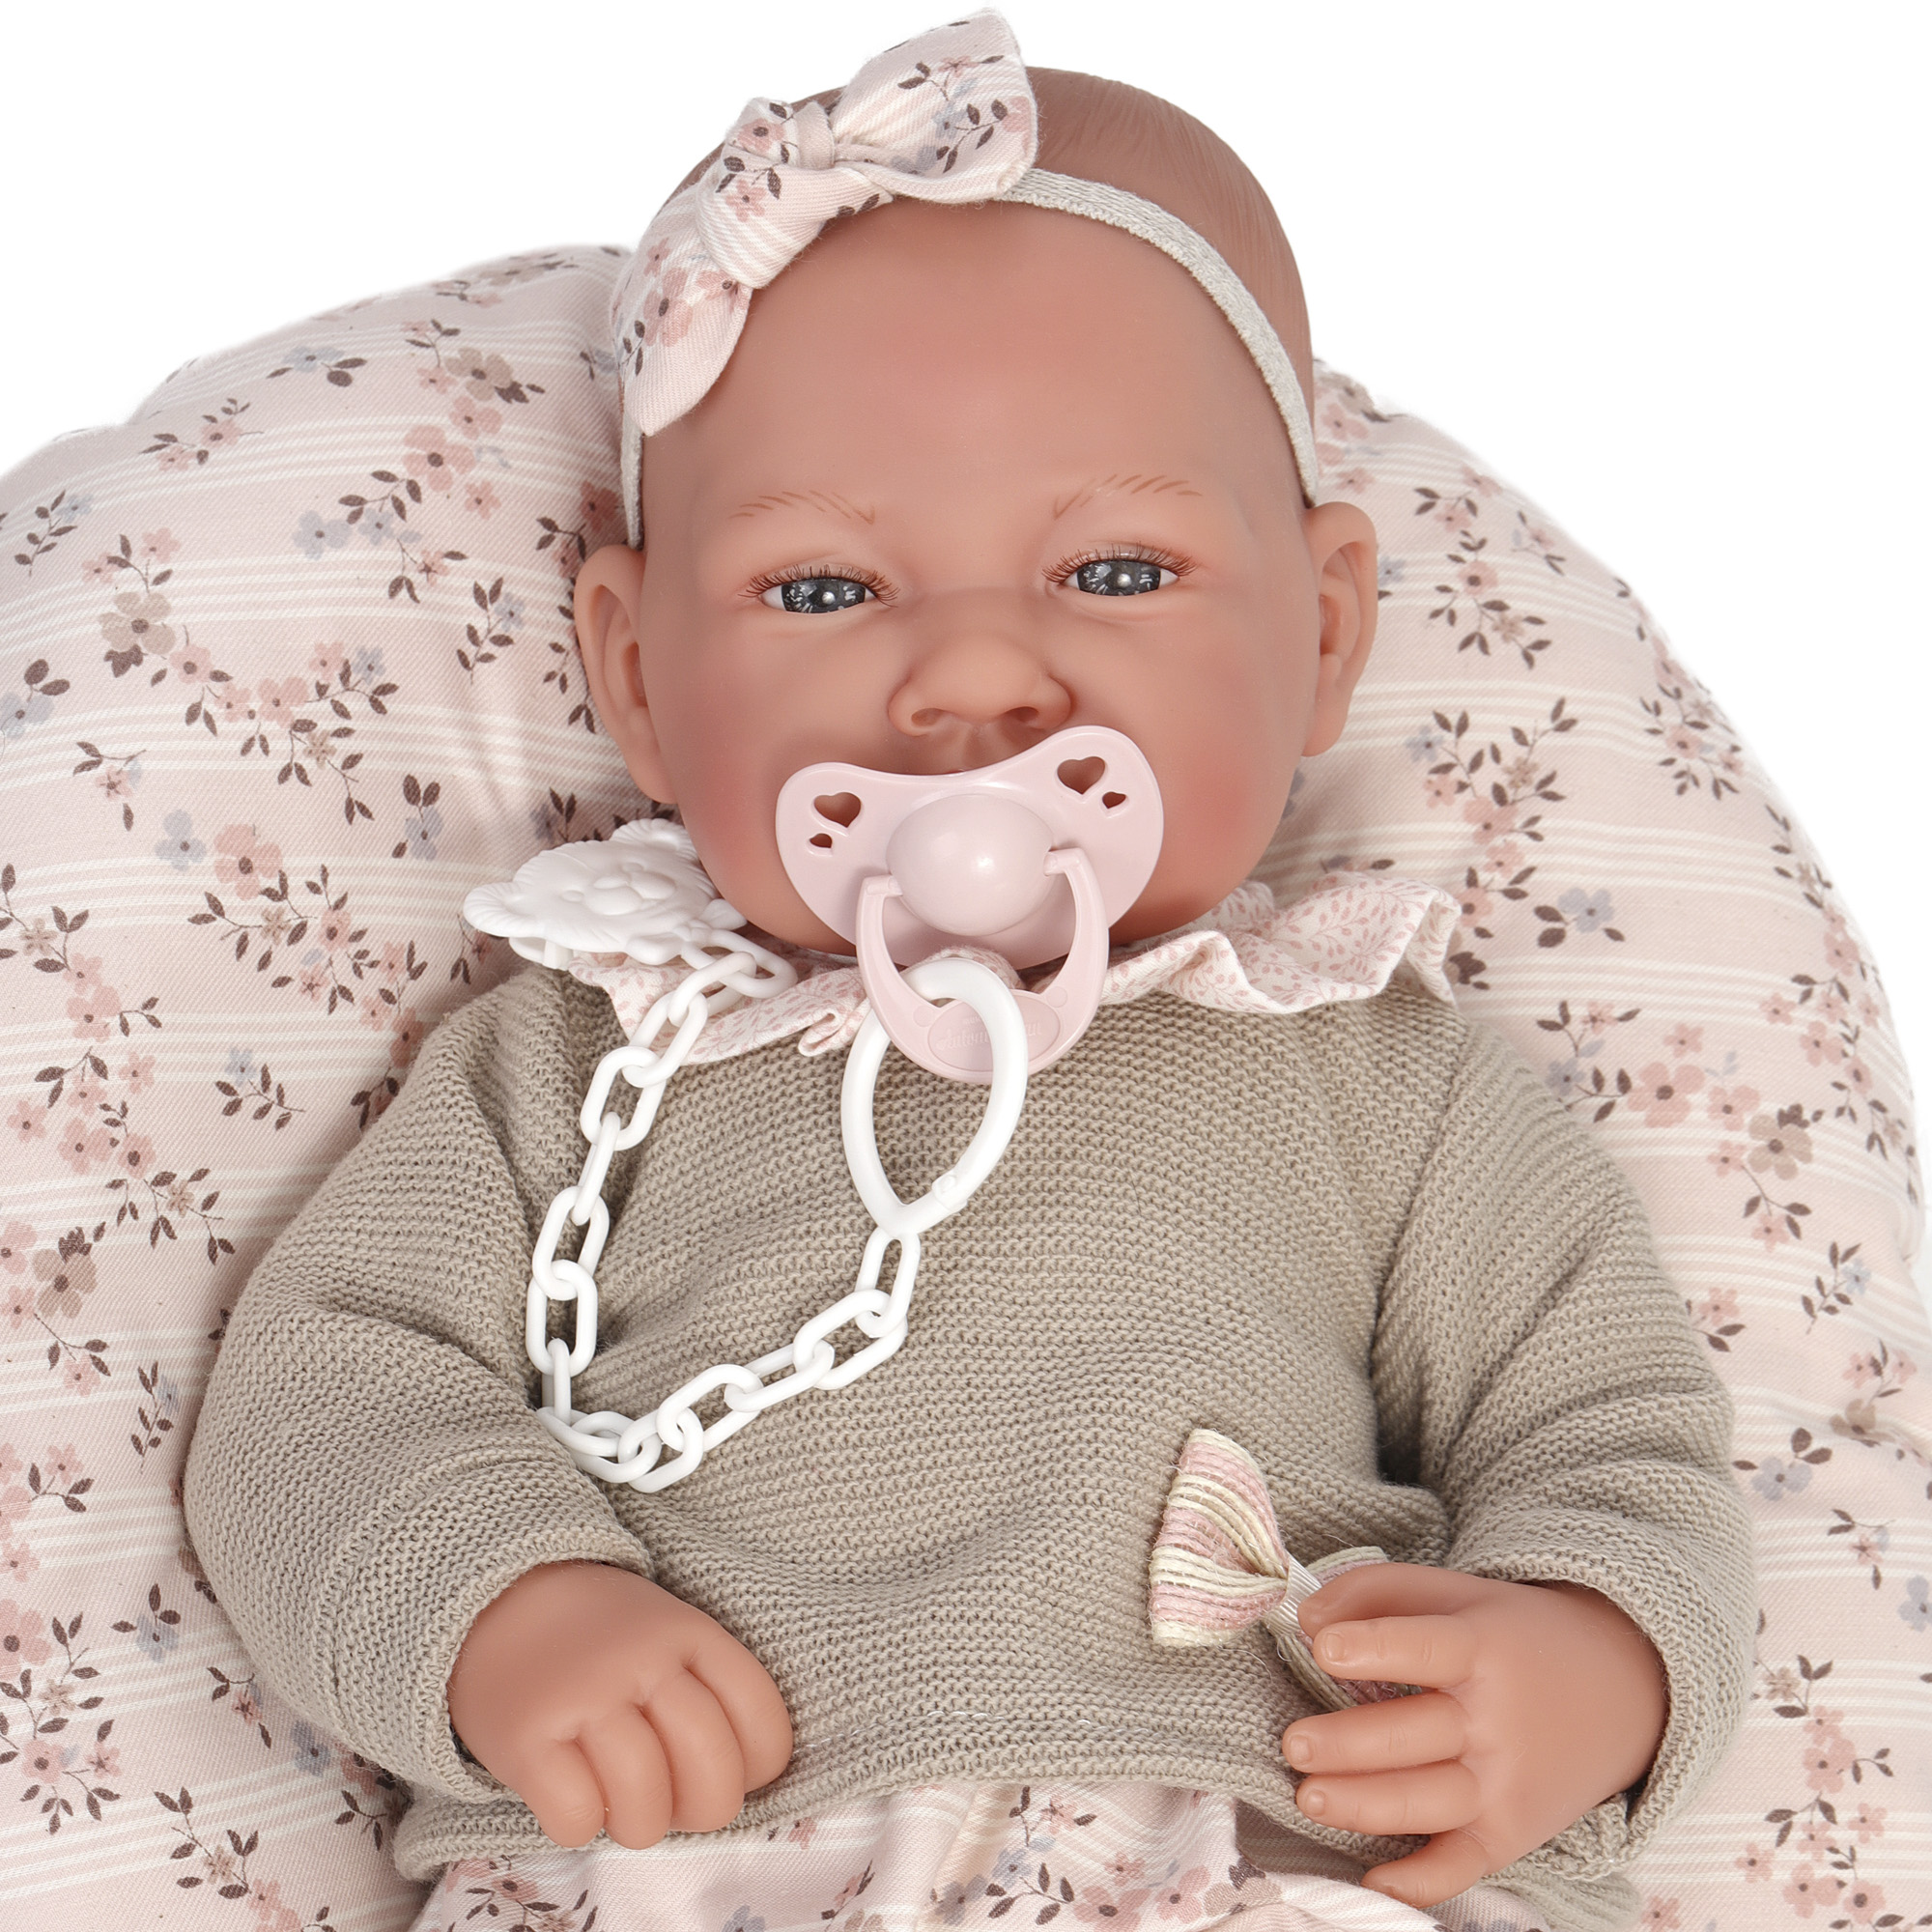  Кукла-младенец Оли в бежевом 40 см мягконабивная  